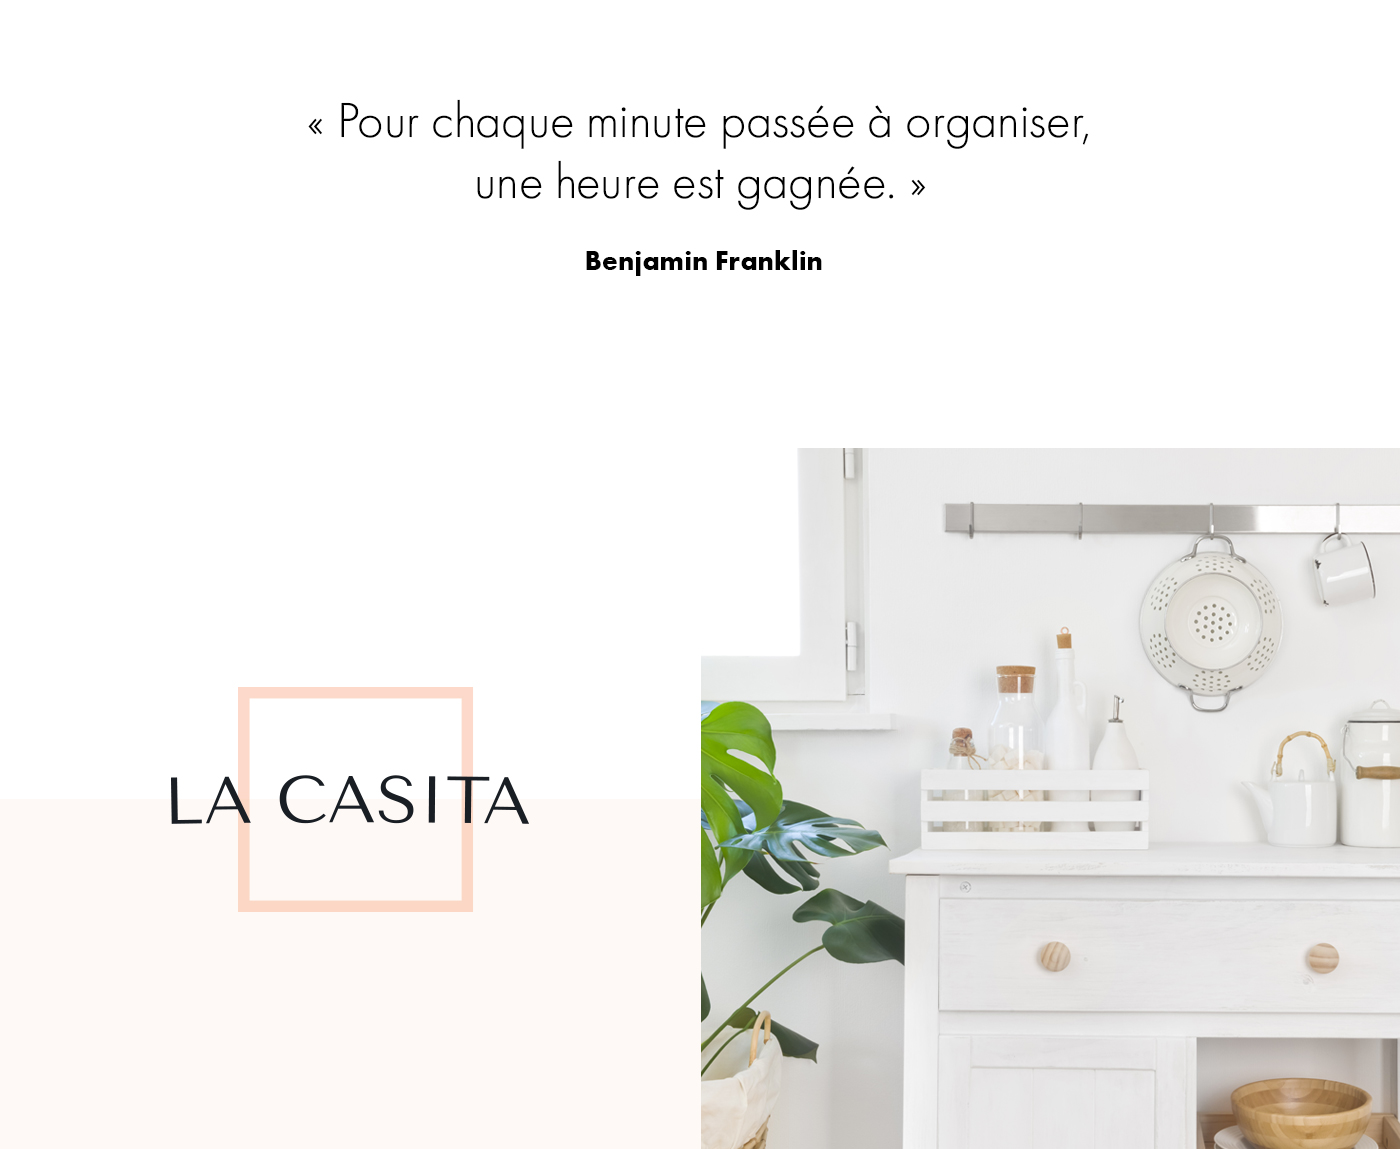 Site Web de La Casita, boutique en ligne et service clé en main d'organisation et optimisation de rangement / 2021 - Réalisation signée Projex Media